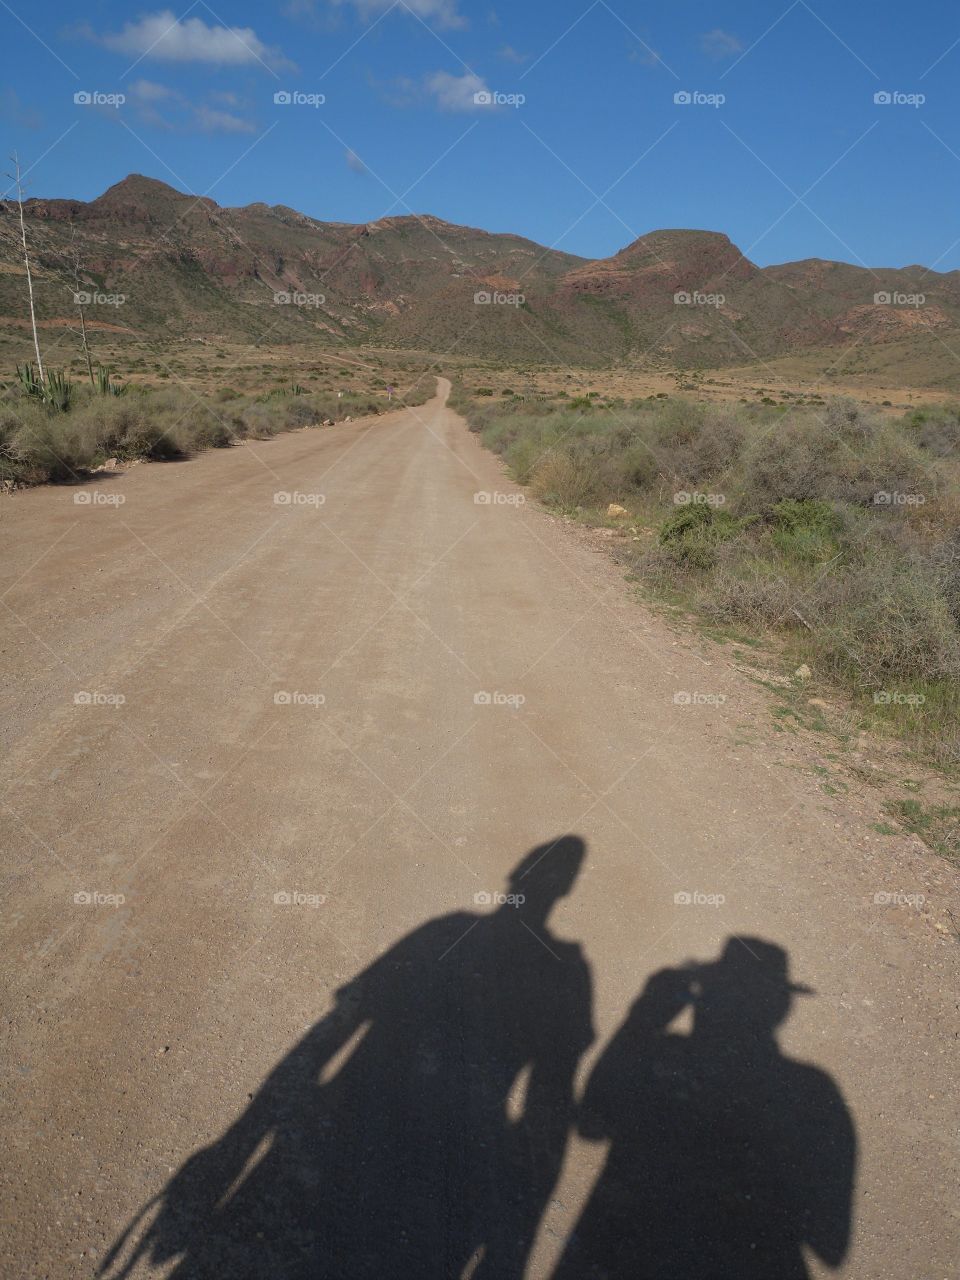 Wandern, Andalusien, Wandern in der Wüste, Trockenheit, Hitze, Walk, hike, heat, desert